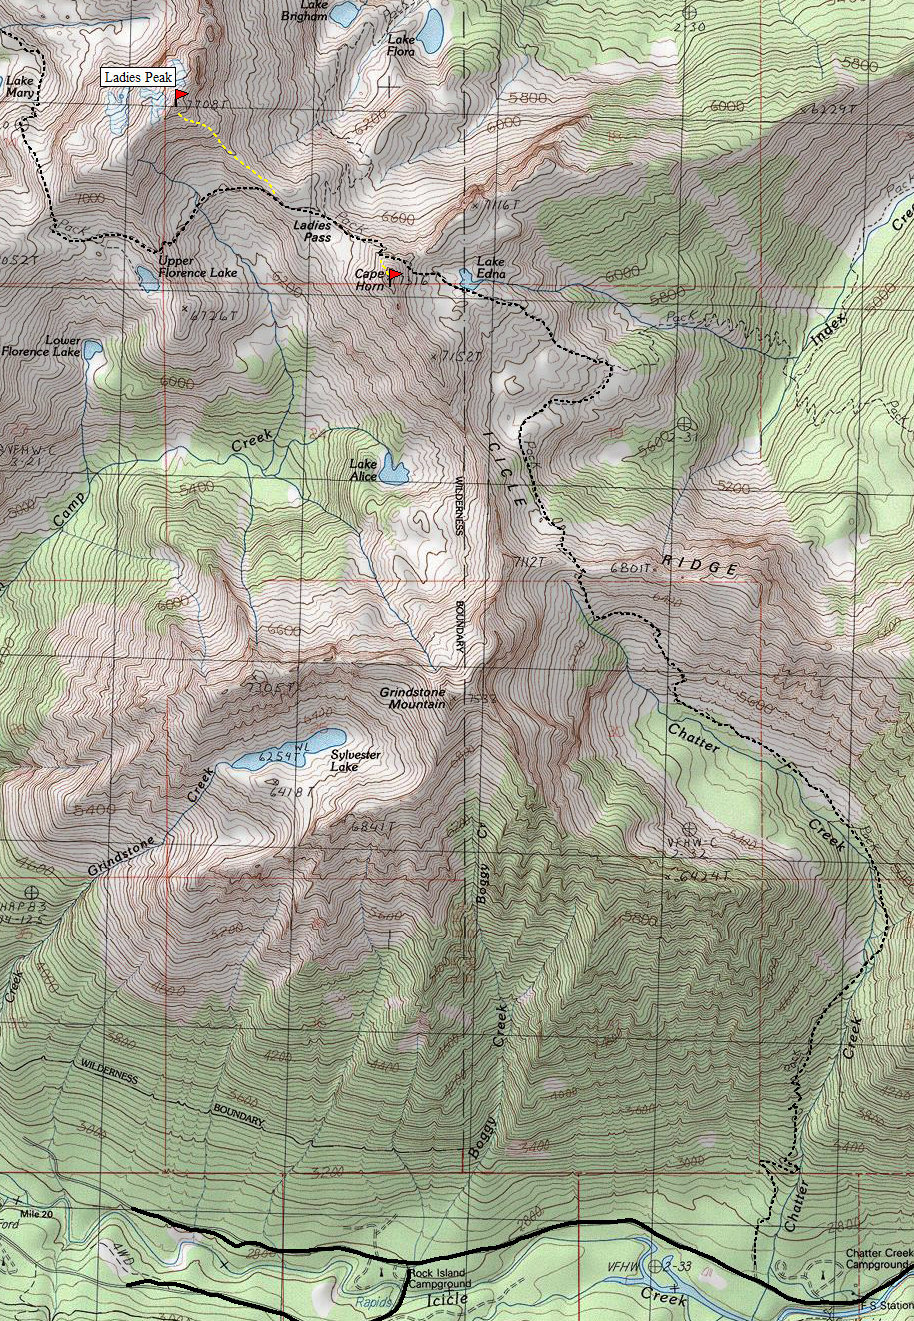 Ladies Peak Map